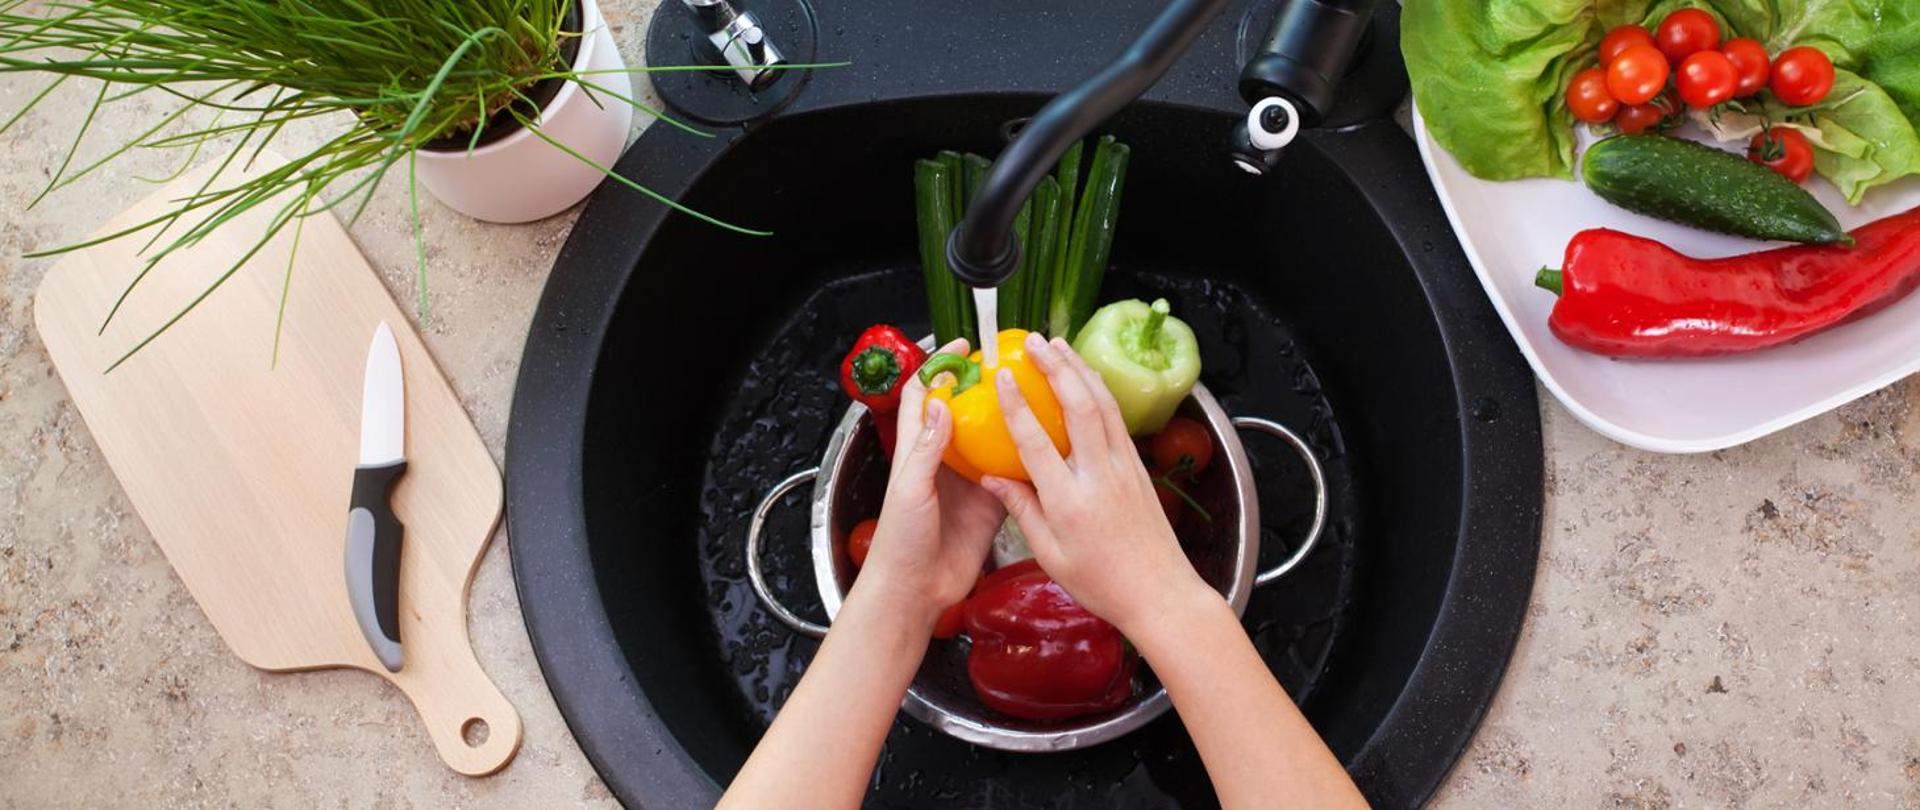 Po lewej deska do krojenia, na niej nóż, powyżej doniczka ze szczypiorkiem, na środku czarny zlew i kran, rece myją kolorowe papryki, po prawej na talerzu zielona sałata, pomidorki, ogórek, czerwona papryka